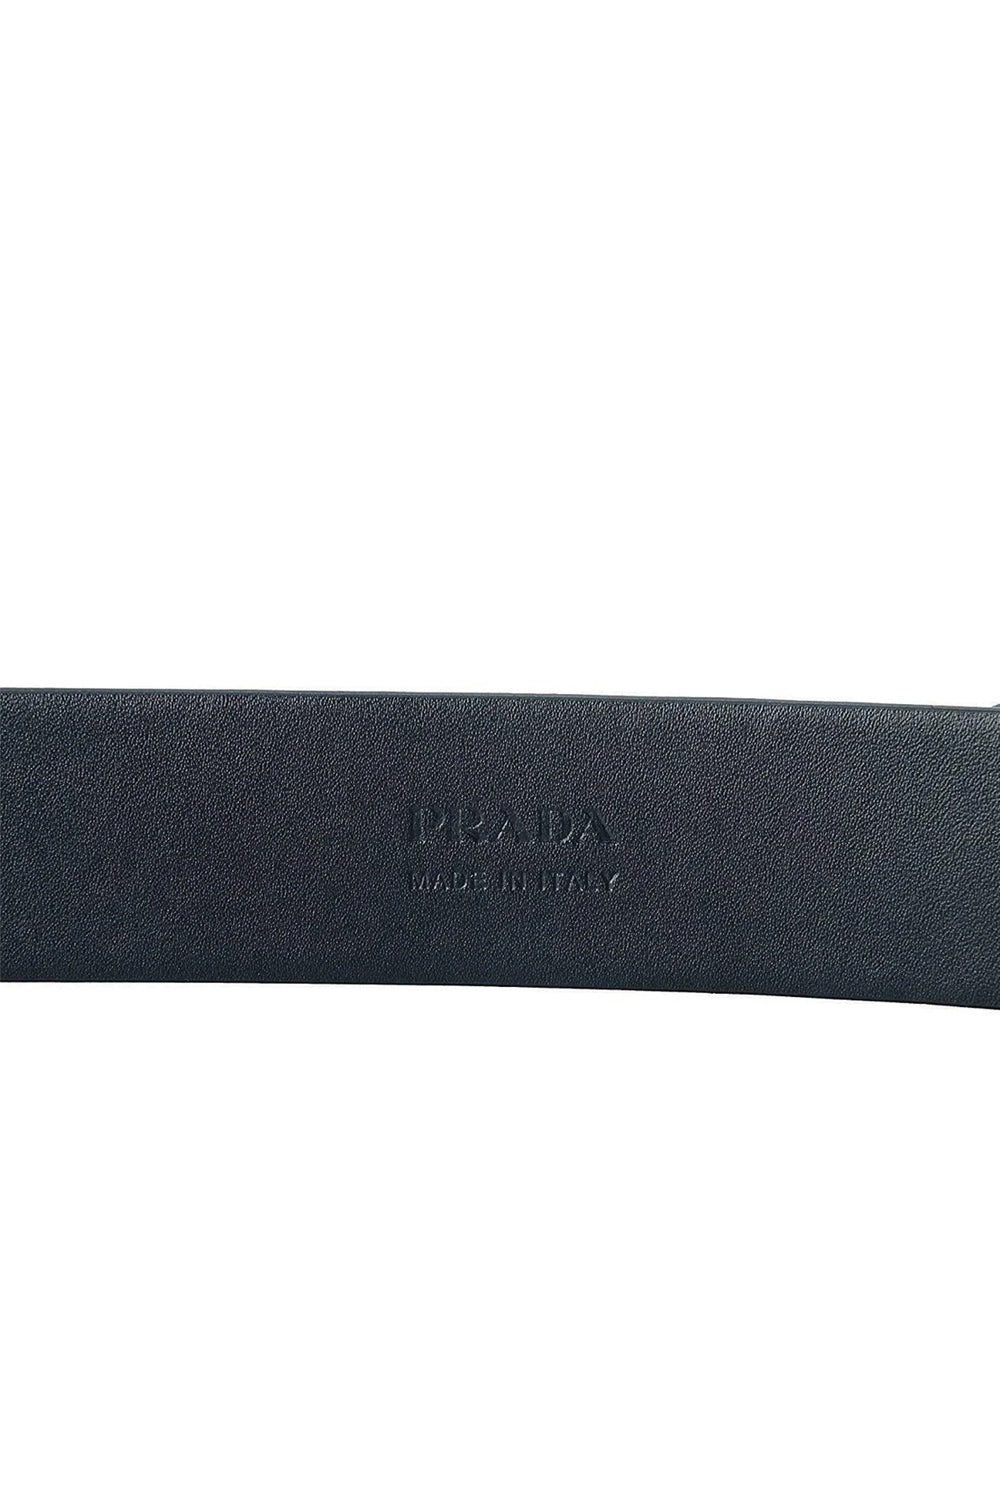 Prada Saffiano Leather Belt Buckle